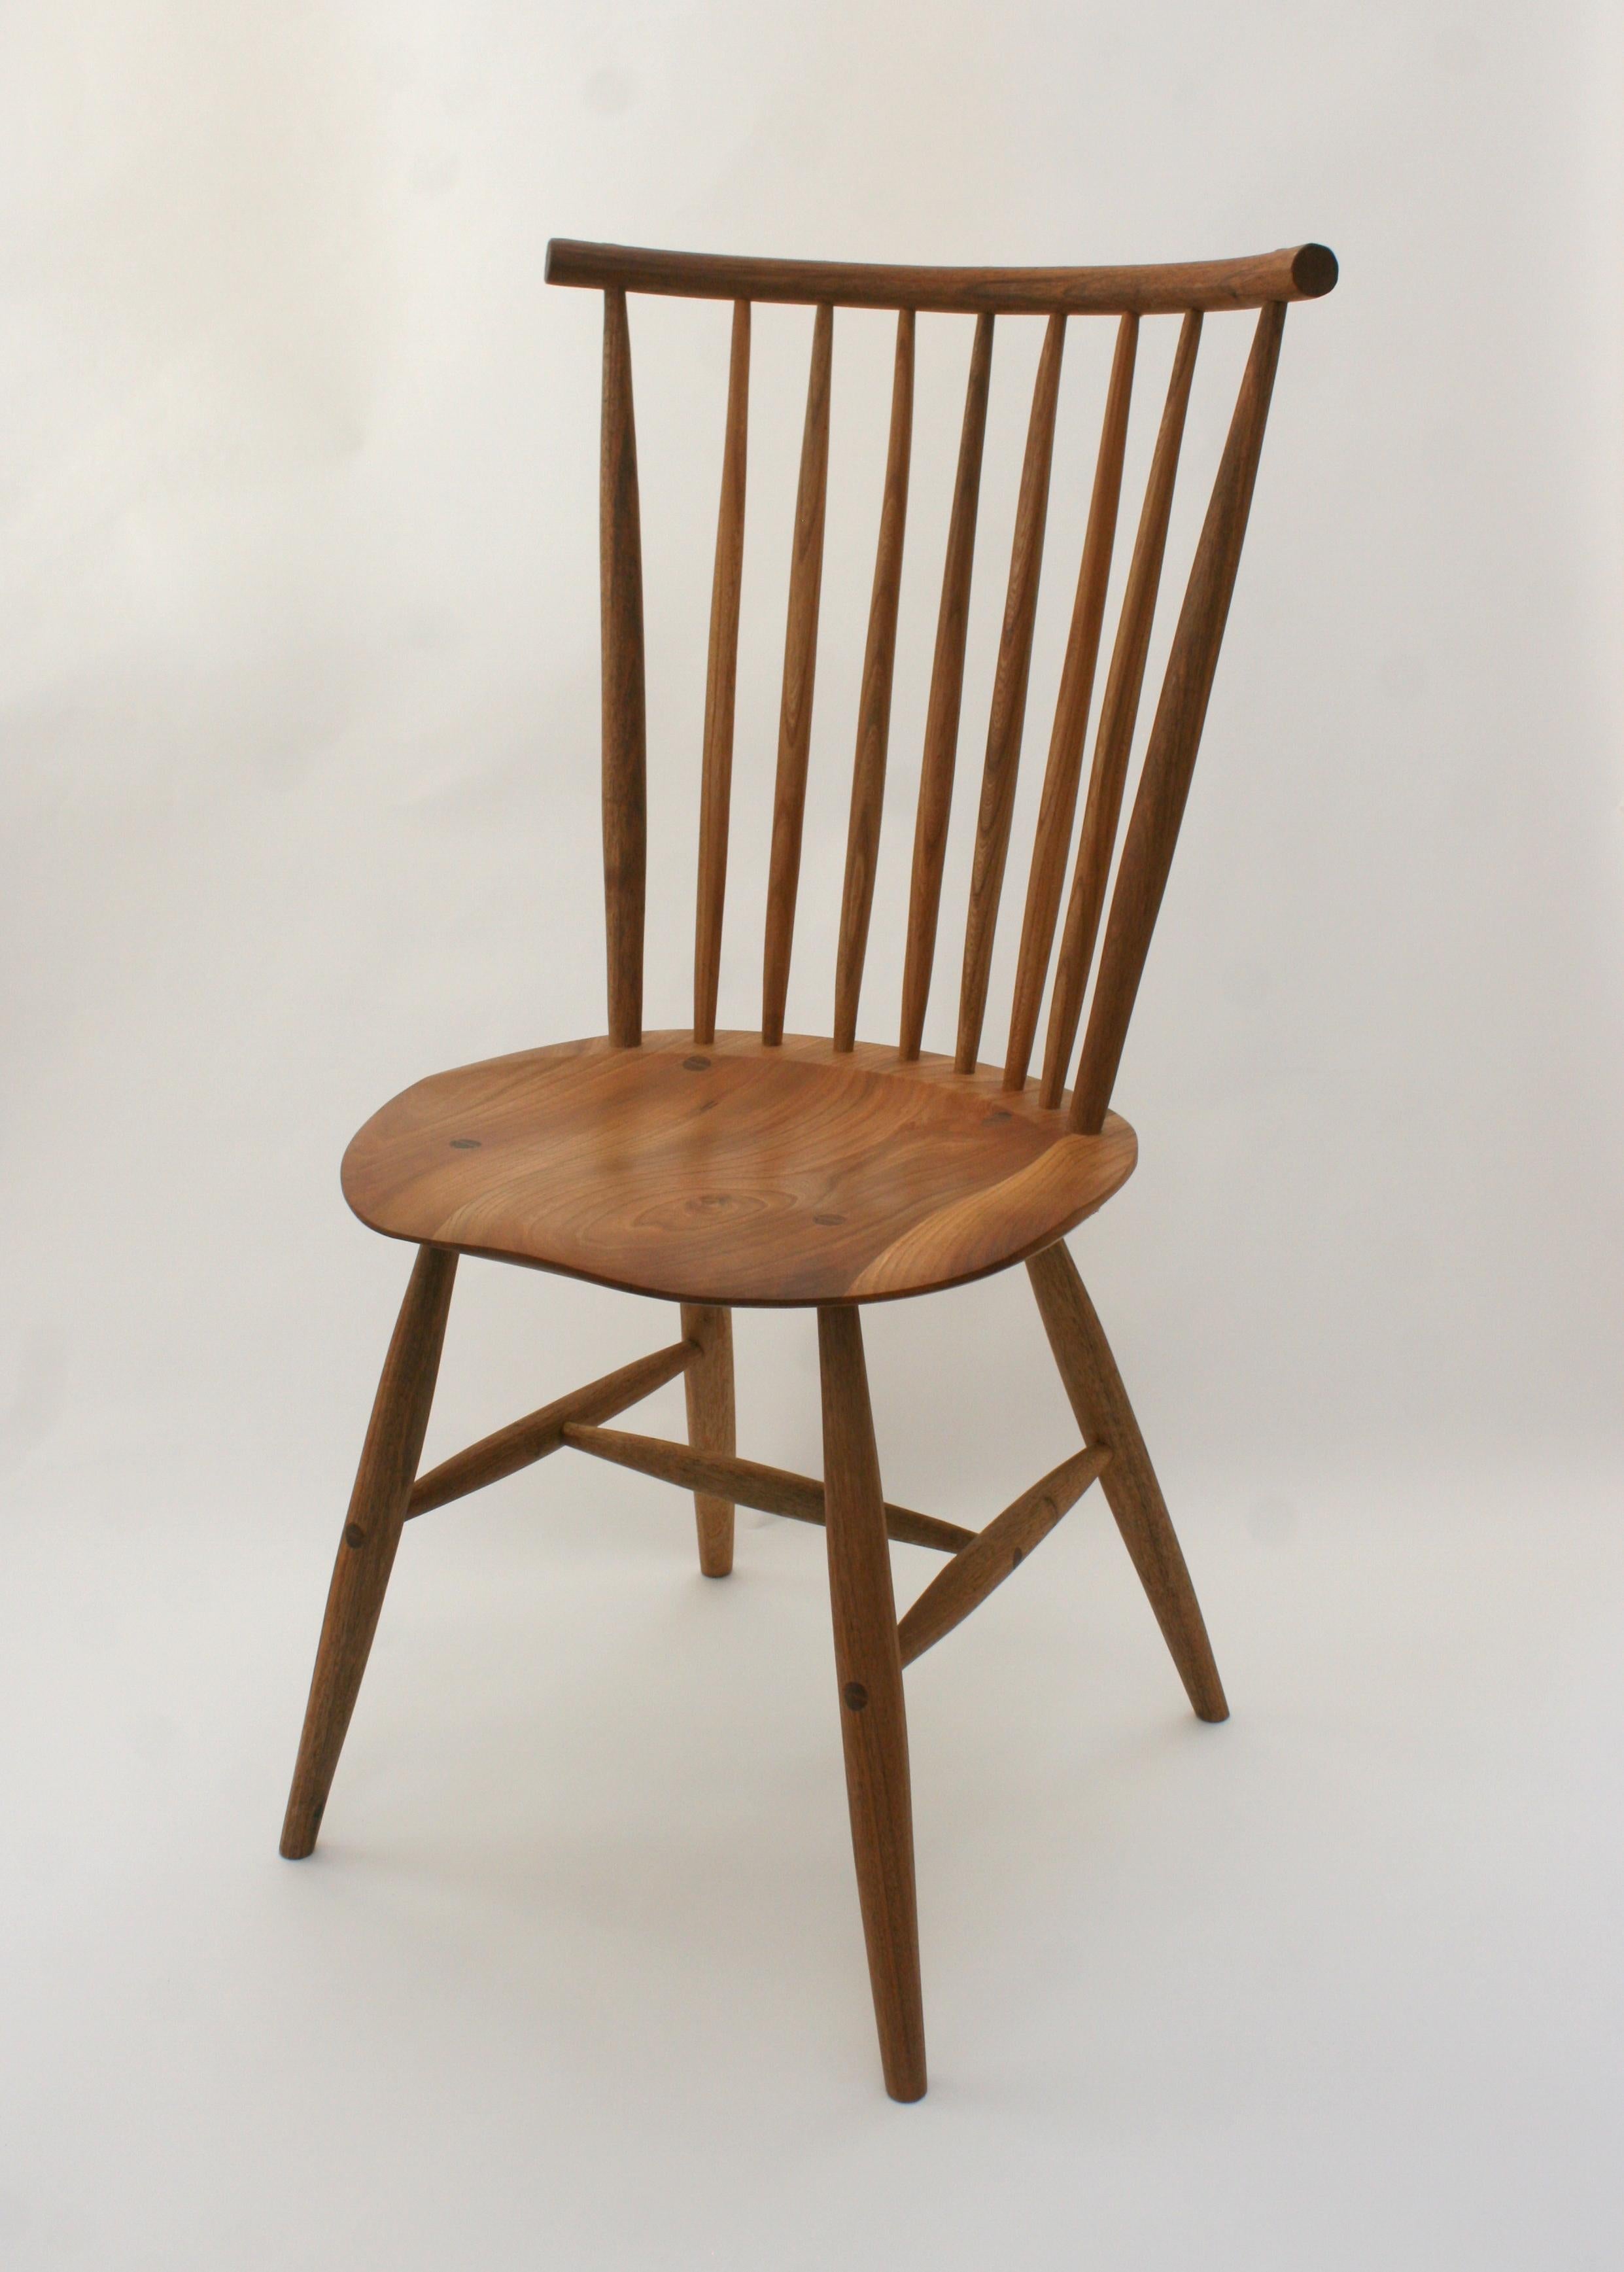 Maßgefertigter Windsor-Stuhl des deutschen Holzbauers Fabian Fischer. Hergestellt in der Tradition und Qualität des amerikanischen Studio-Handwerks. Der Preis spiegelt den Stuhl in Eiche wider, kann aber auch in Kirsche und Nussbaum mit einem